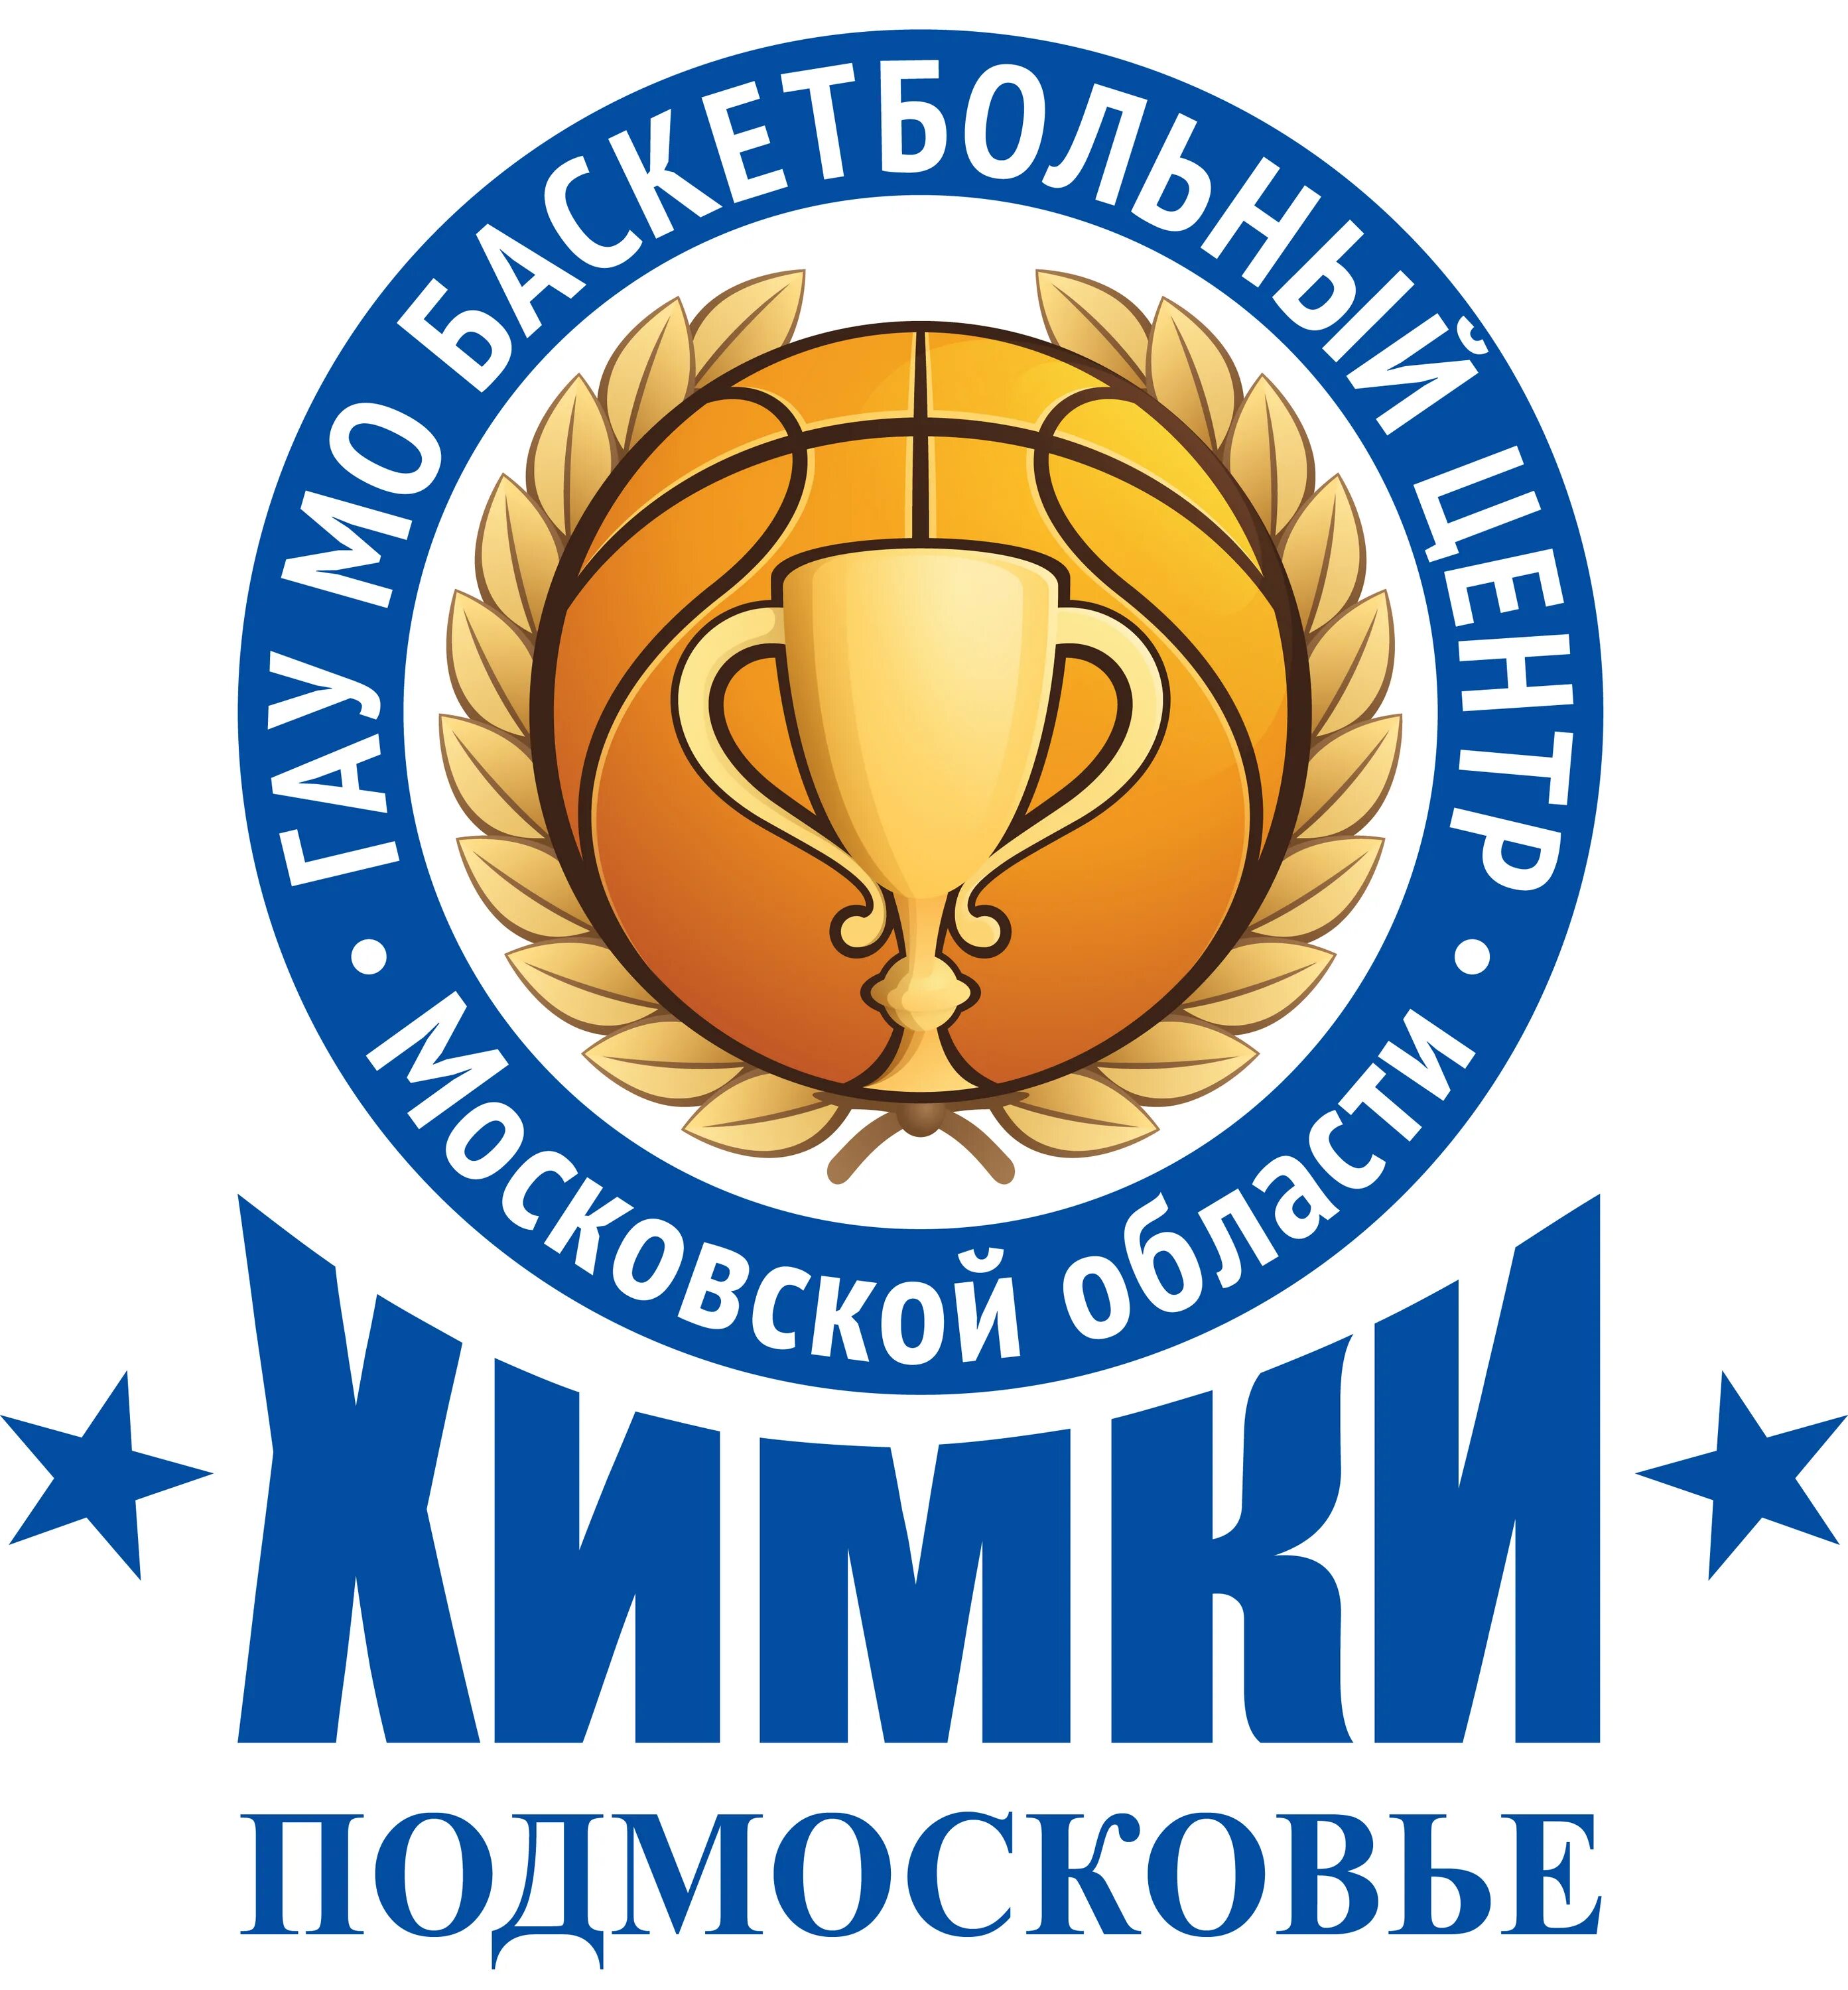 Государственное автономное учреждение московской области. Баскетбольный центр Химки. Команда БК Химки. Химки баскетбольный клуб. «Химки-2» логотип.